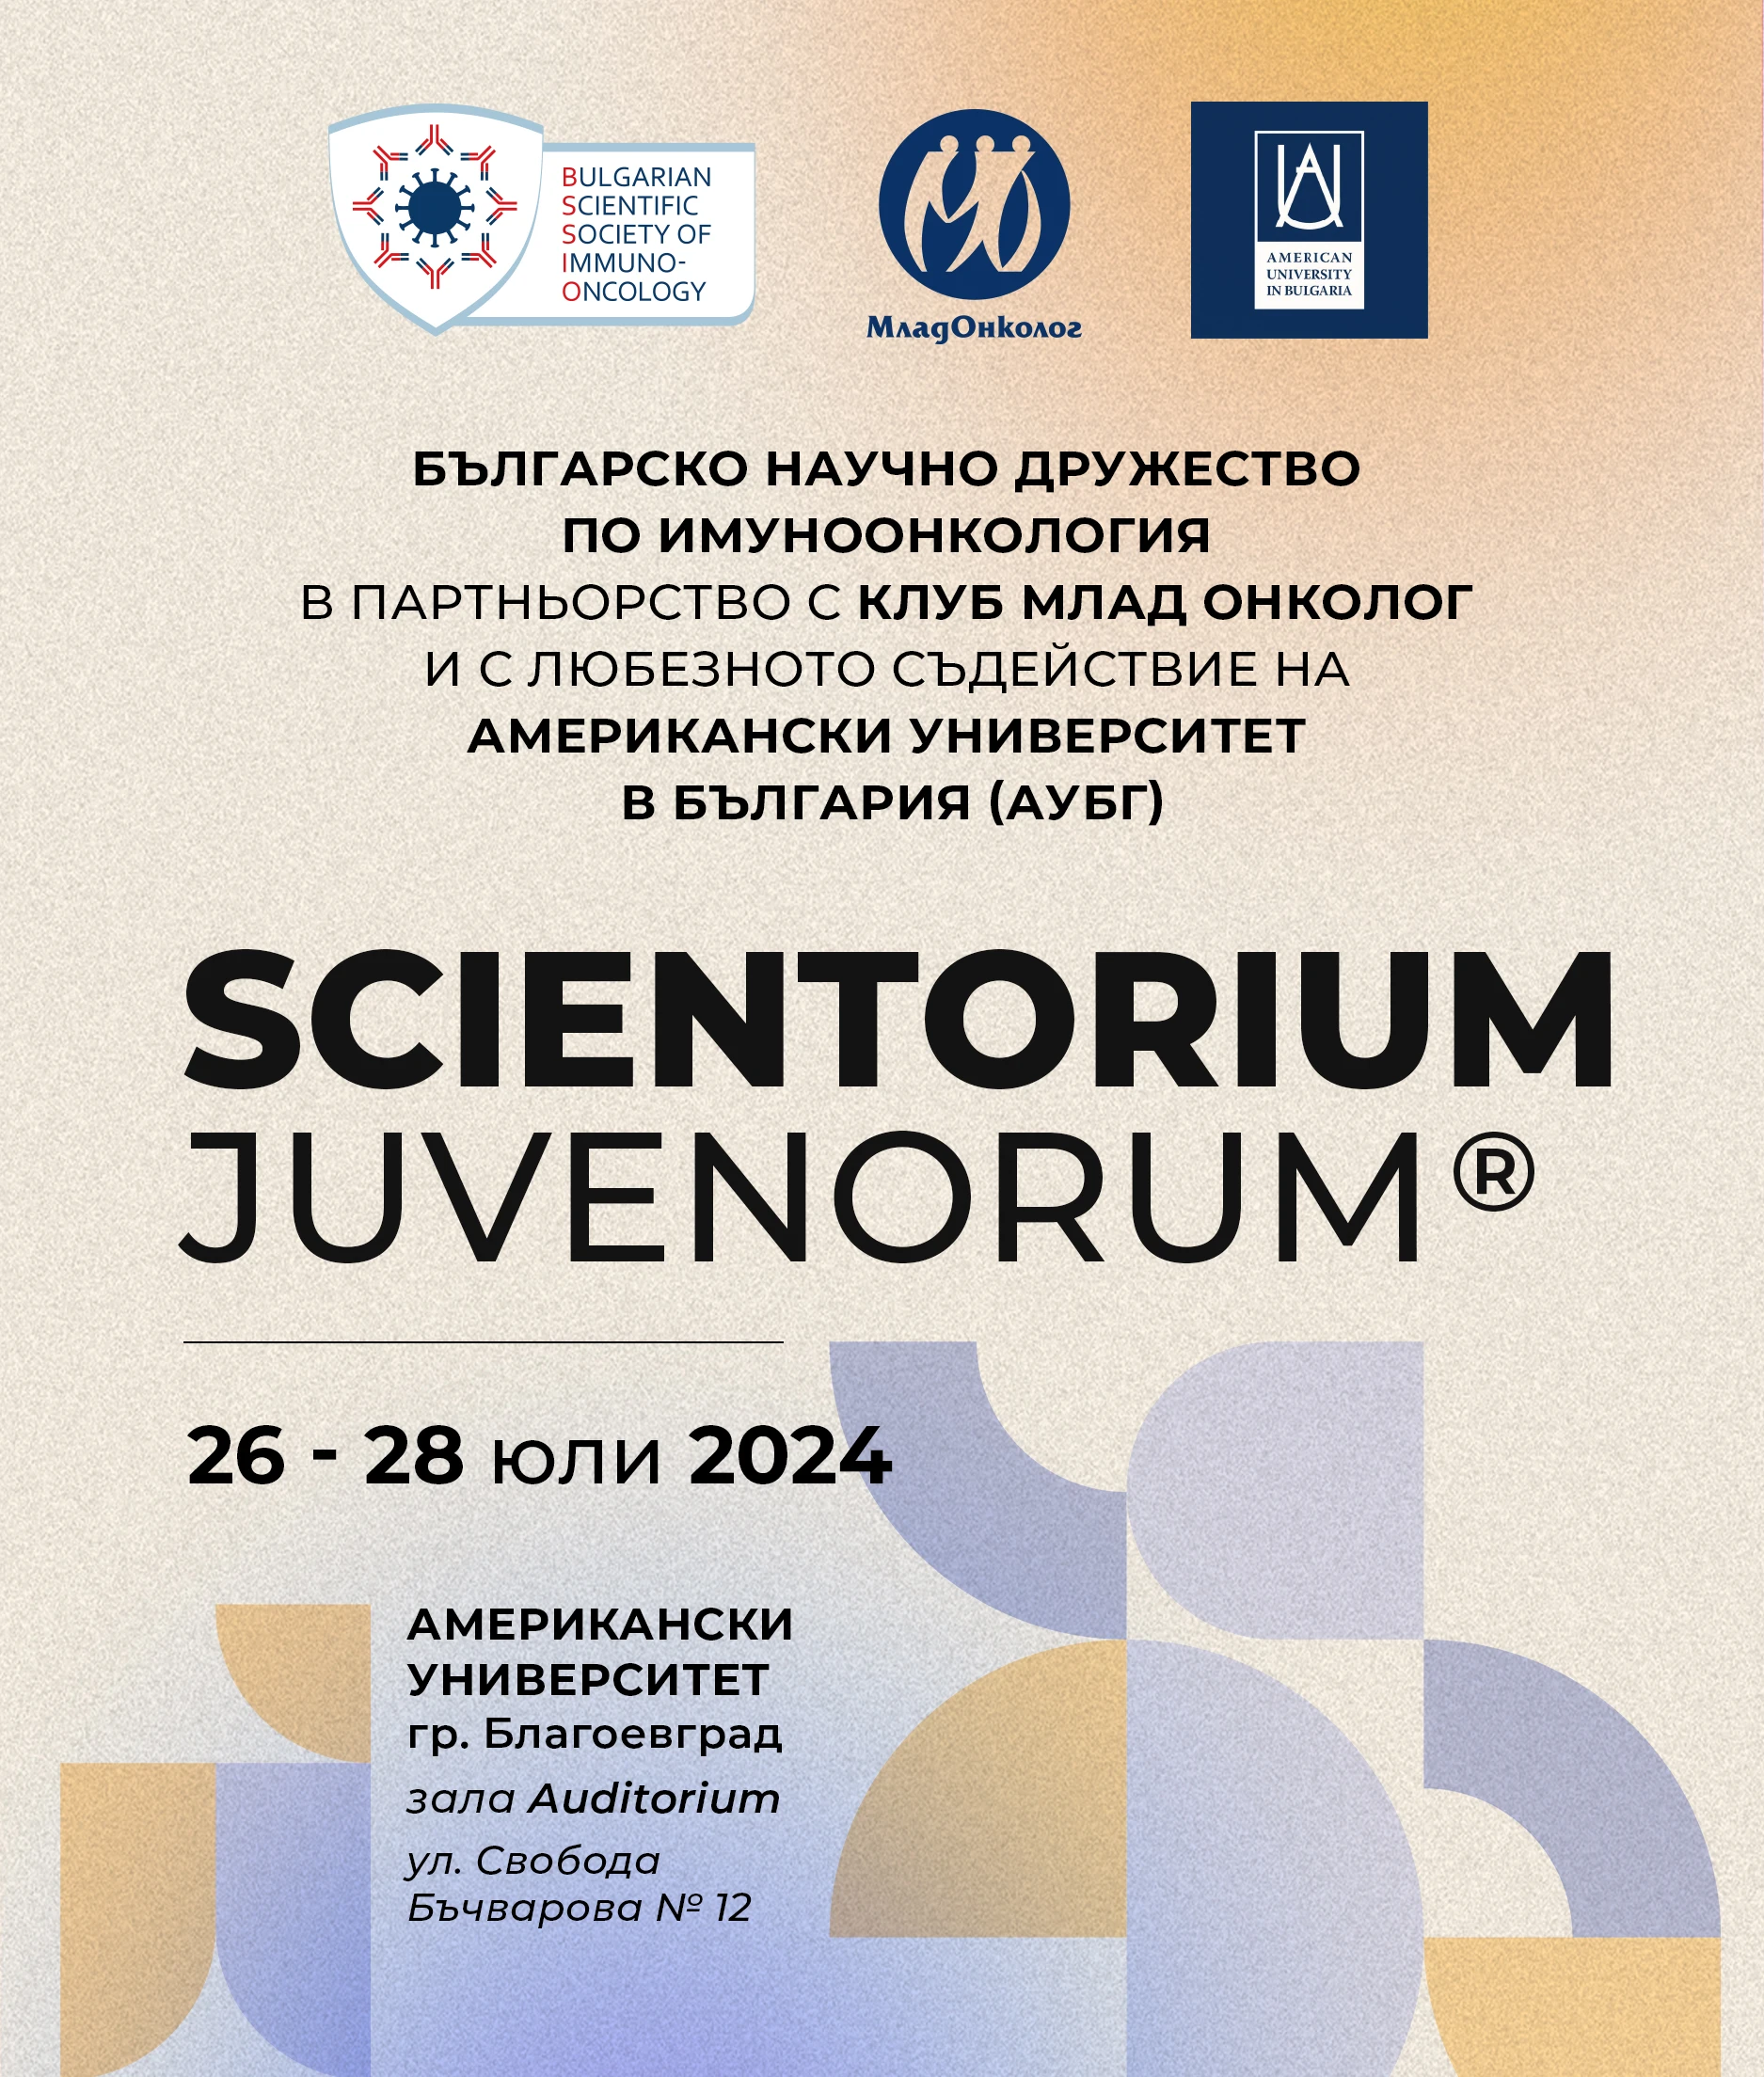 2098-scientorium-2024-web-17136267853075.jpg